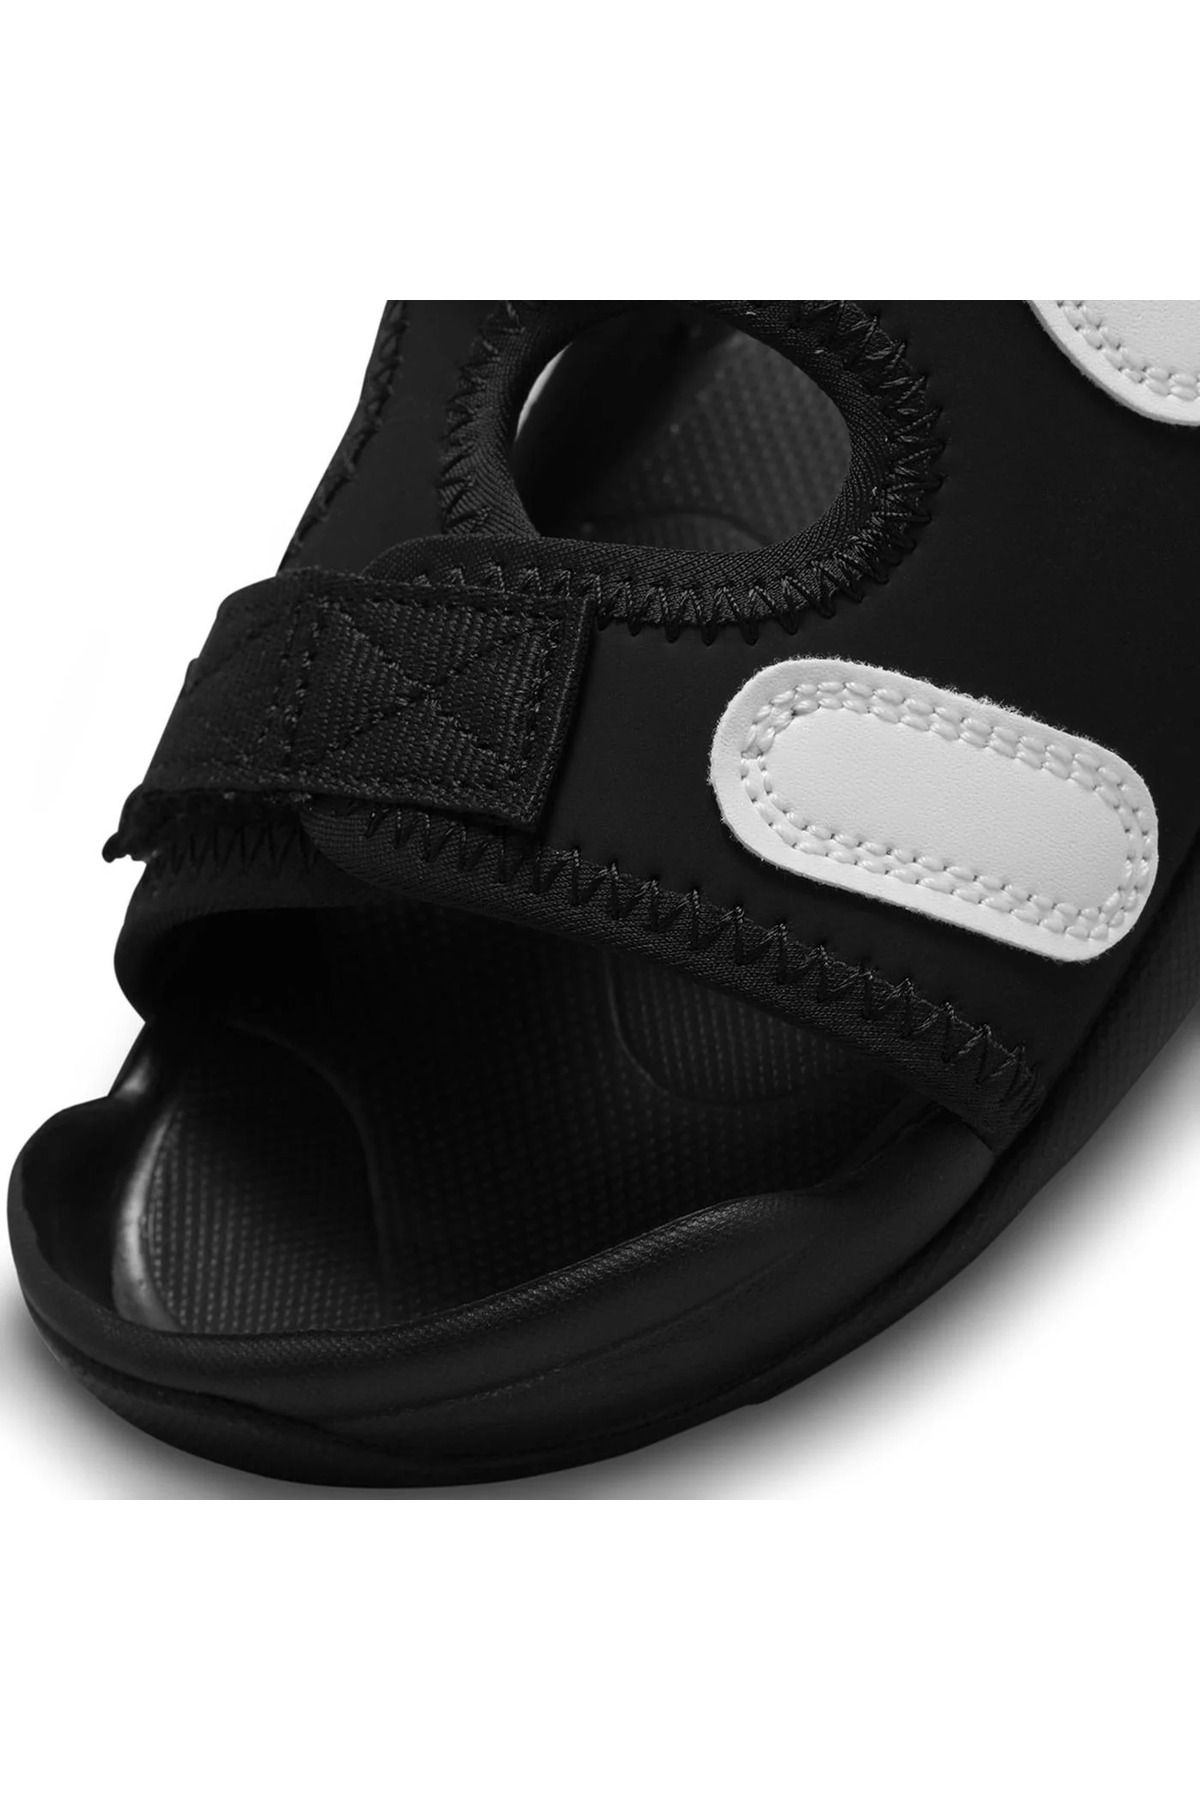 Nike Sunray تنظیم 6 کودک صندل سیاه روزانه